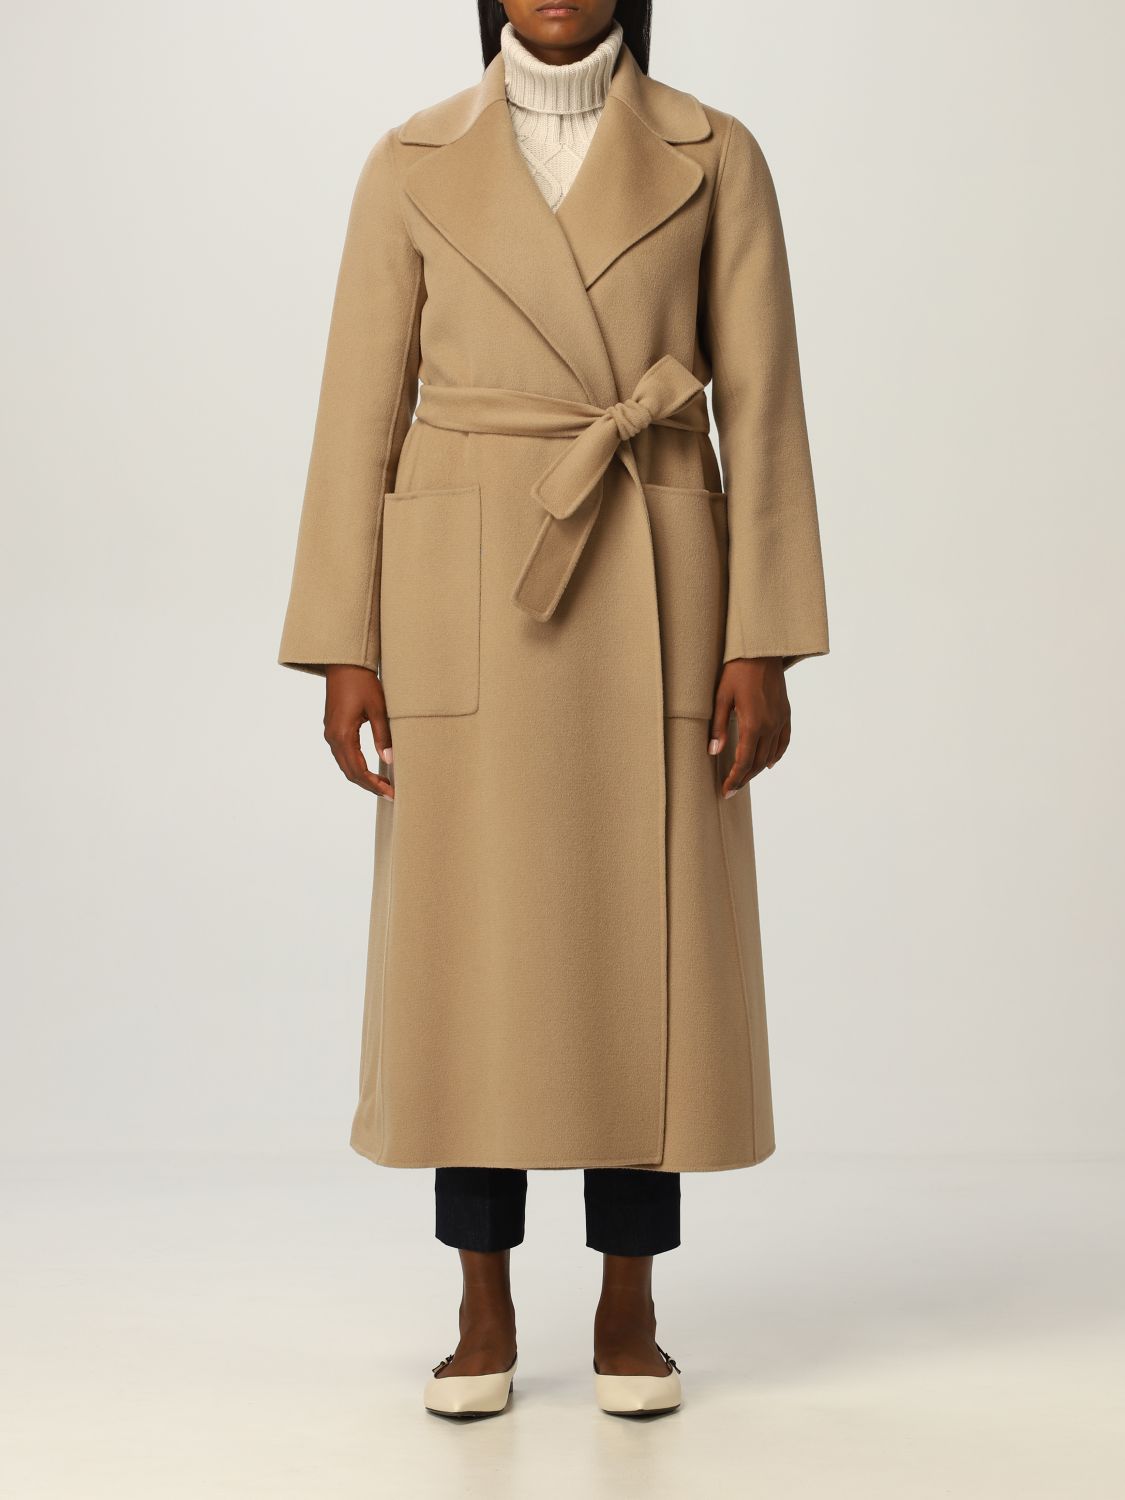 S MAX MARA: virgin wool wrap coat - Camel | S Max Mara coat 90160819600 ...